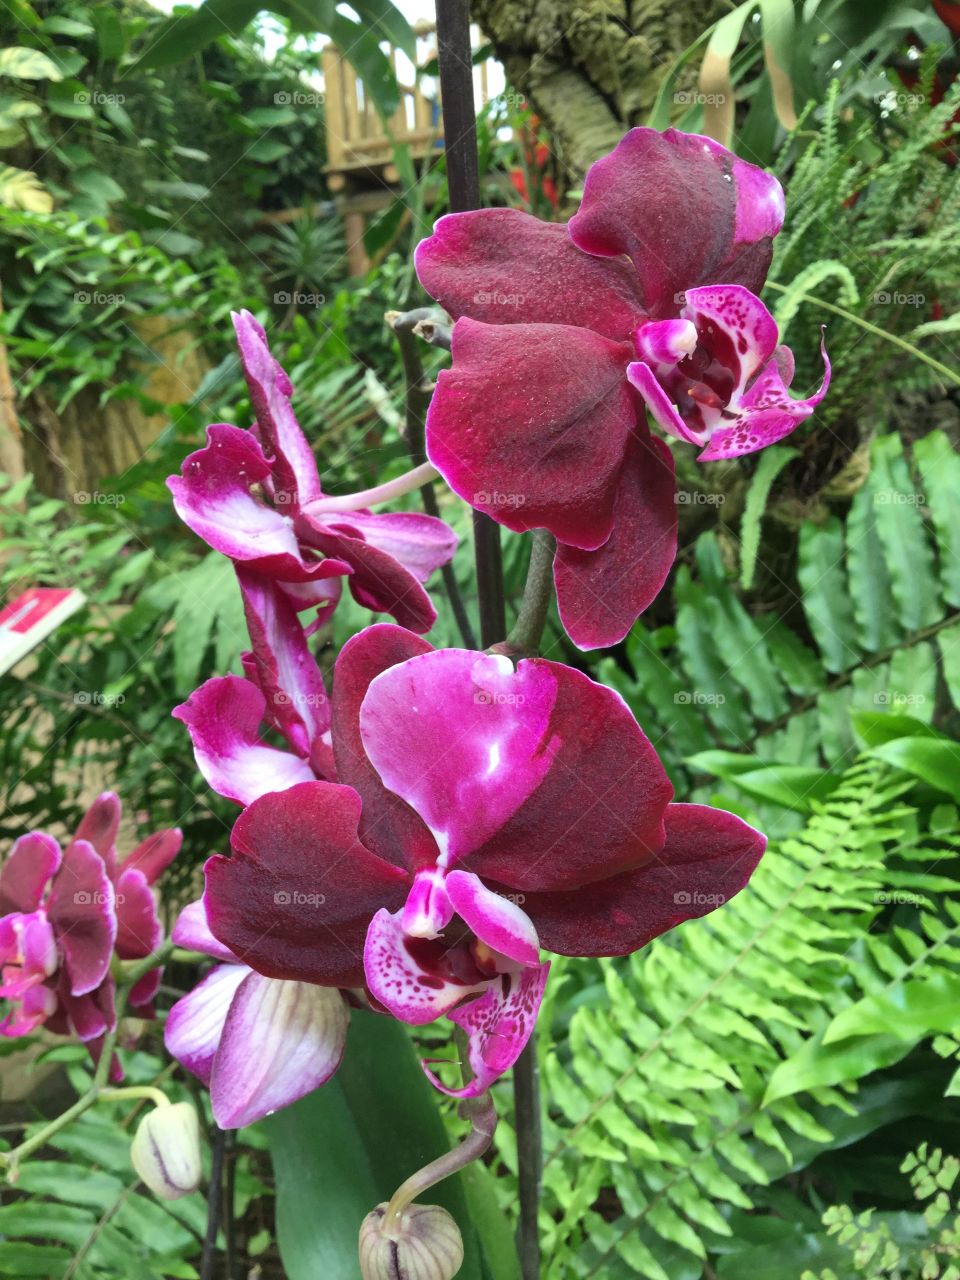 Violet orhid